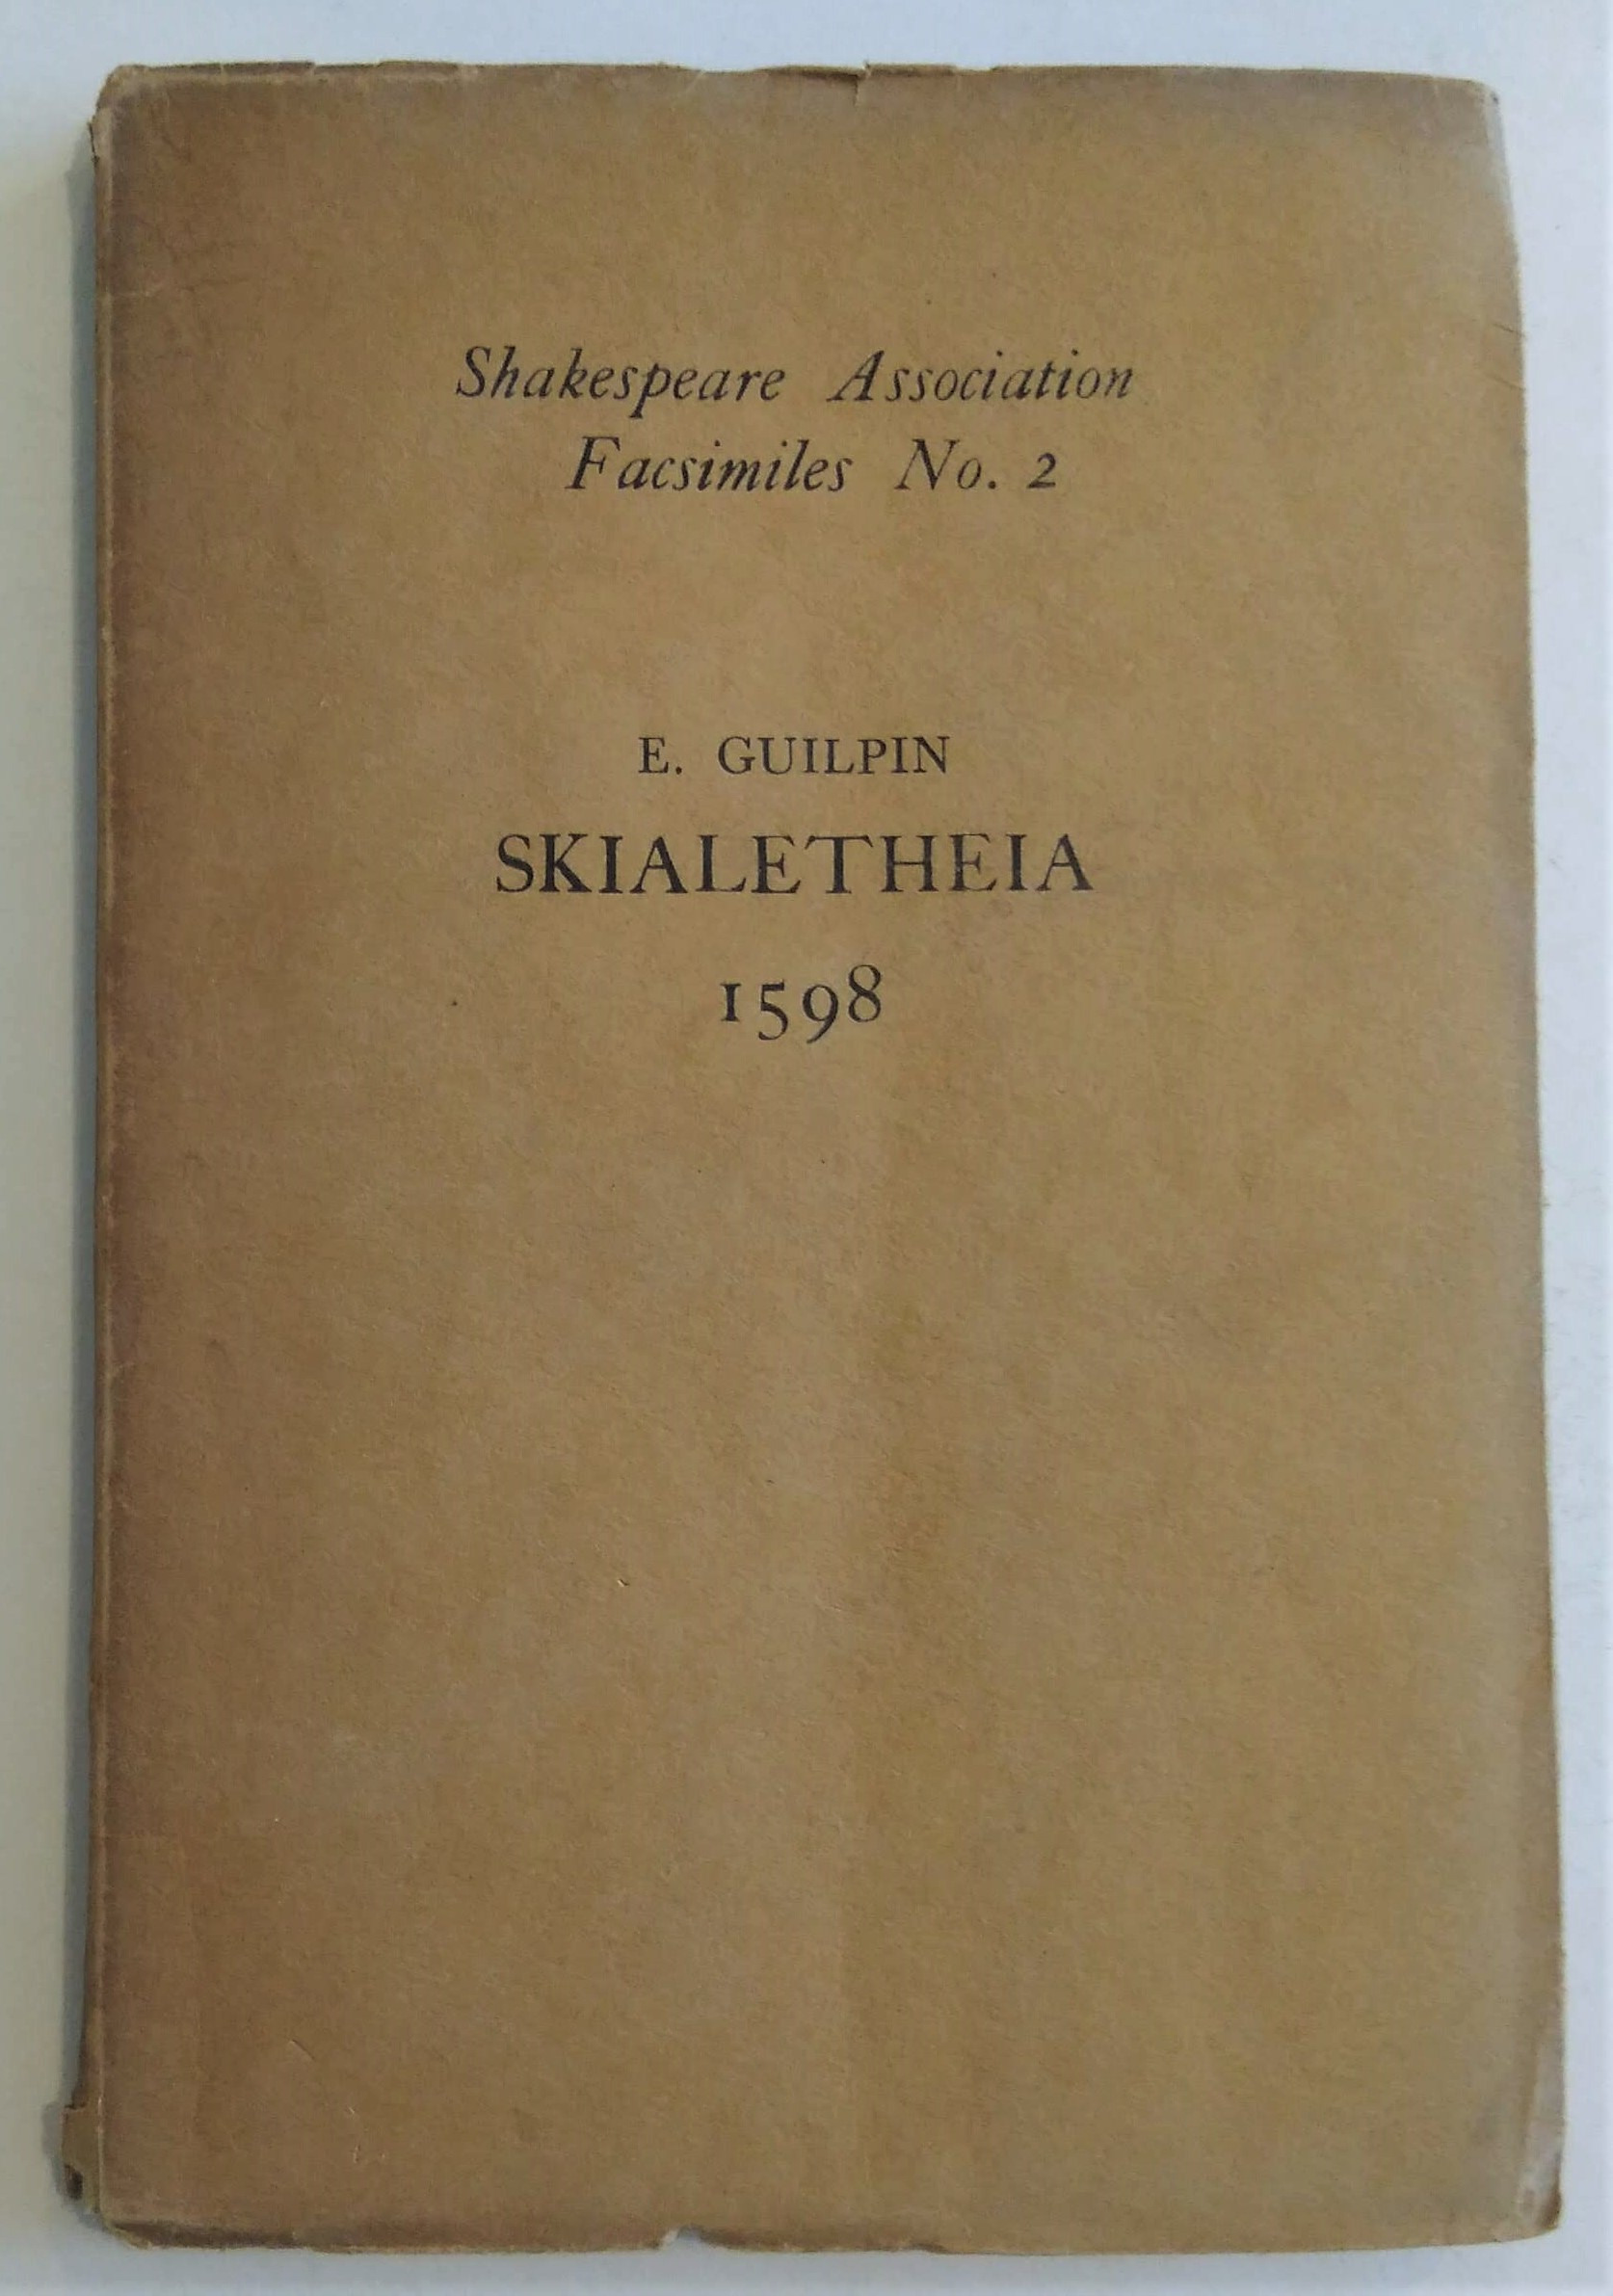 Skialetheia 1598.